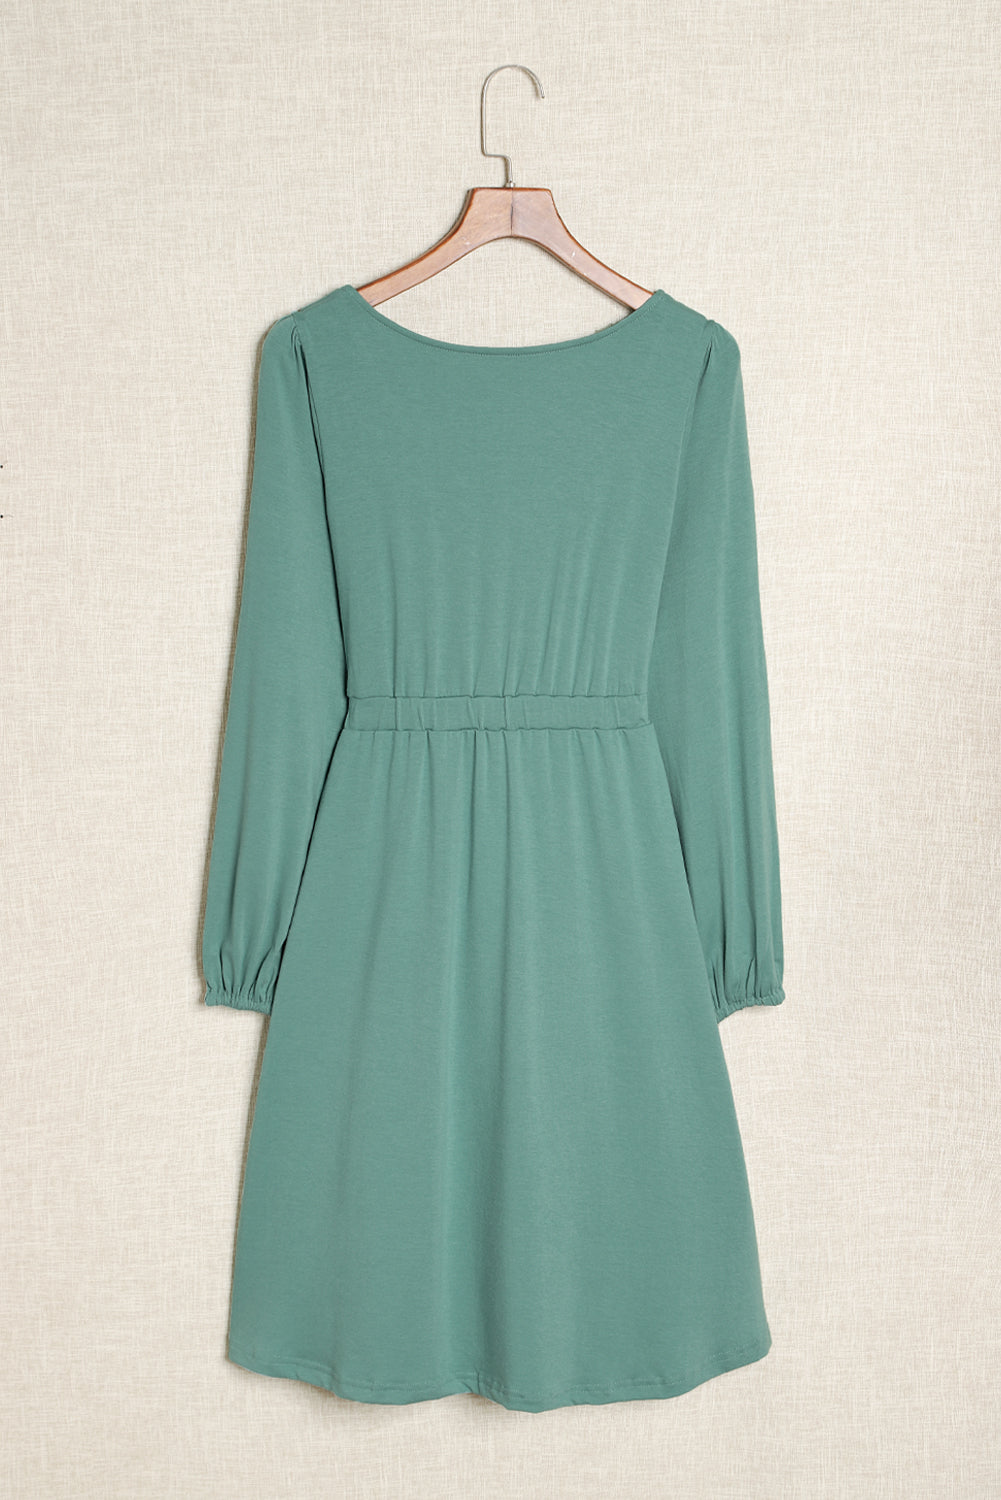 Grünes, langärmliges Kleid mit Knopfleiste und hoher Taille